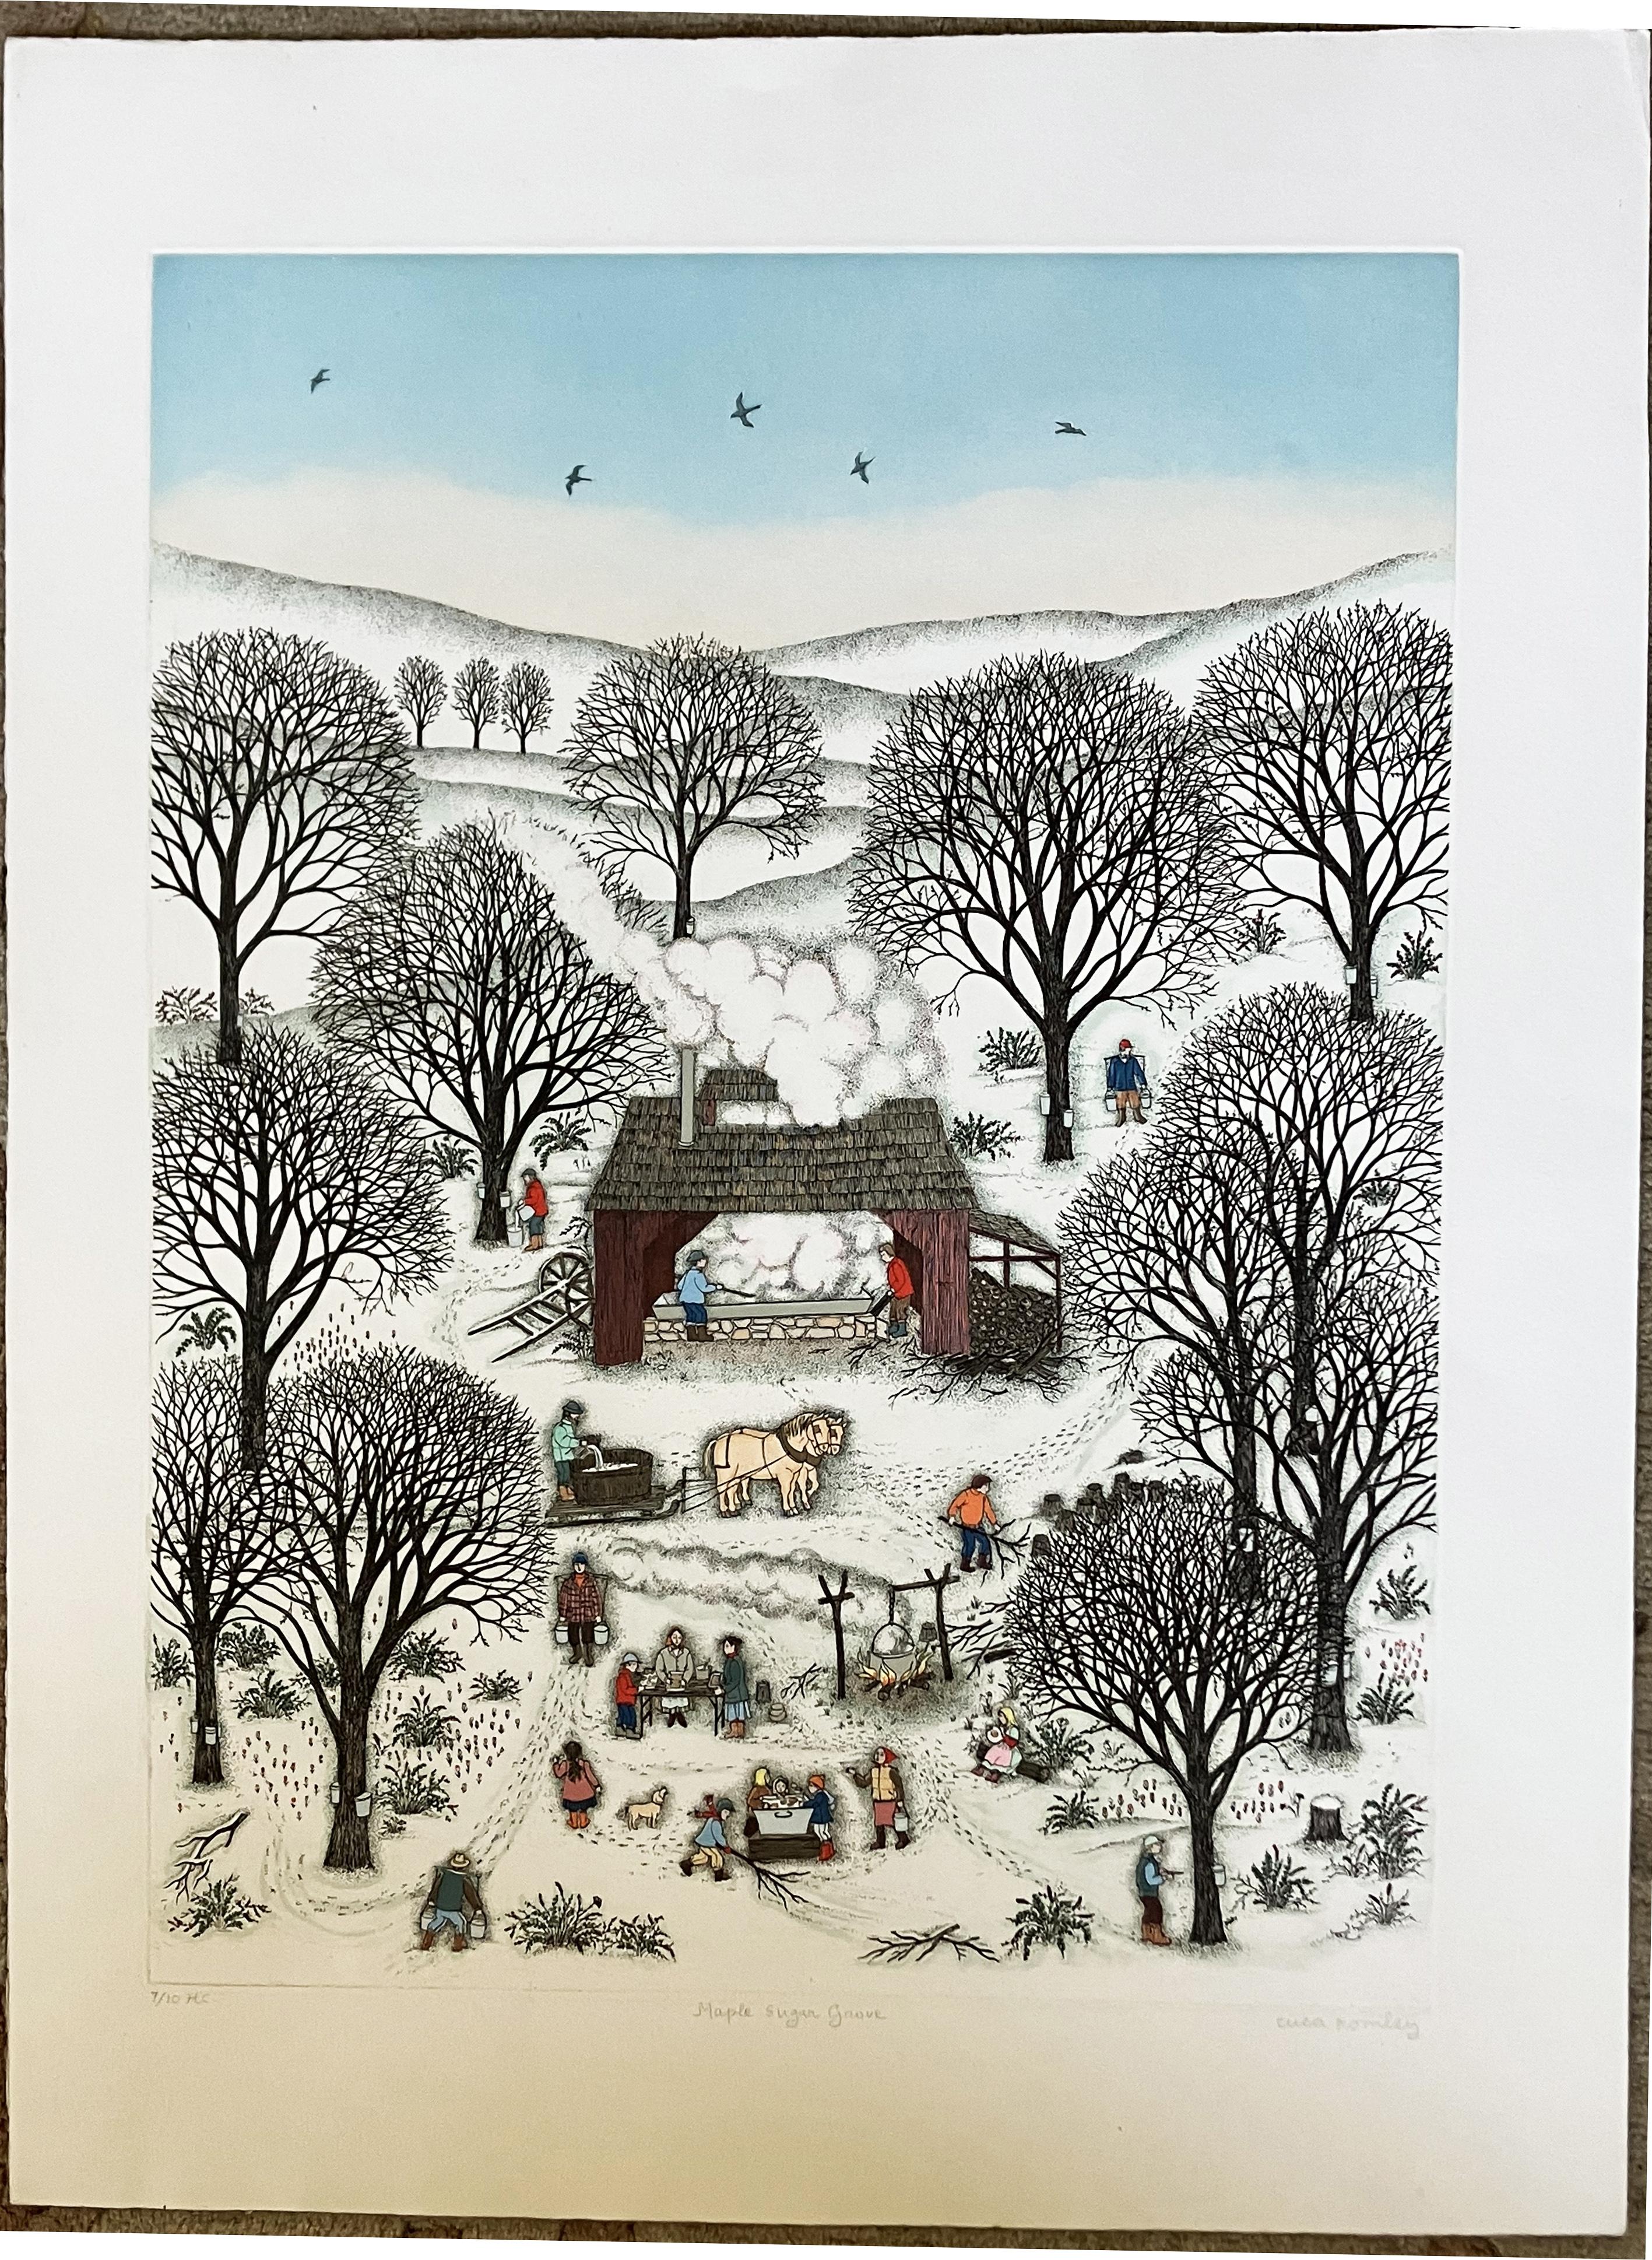 Maple Sugar Grove - Print by Cuca Romley